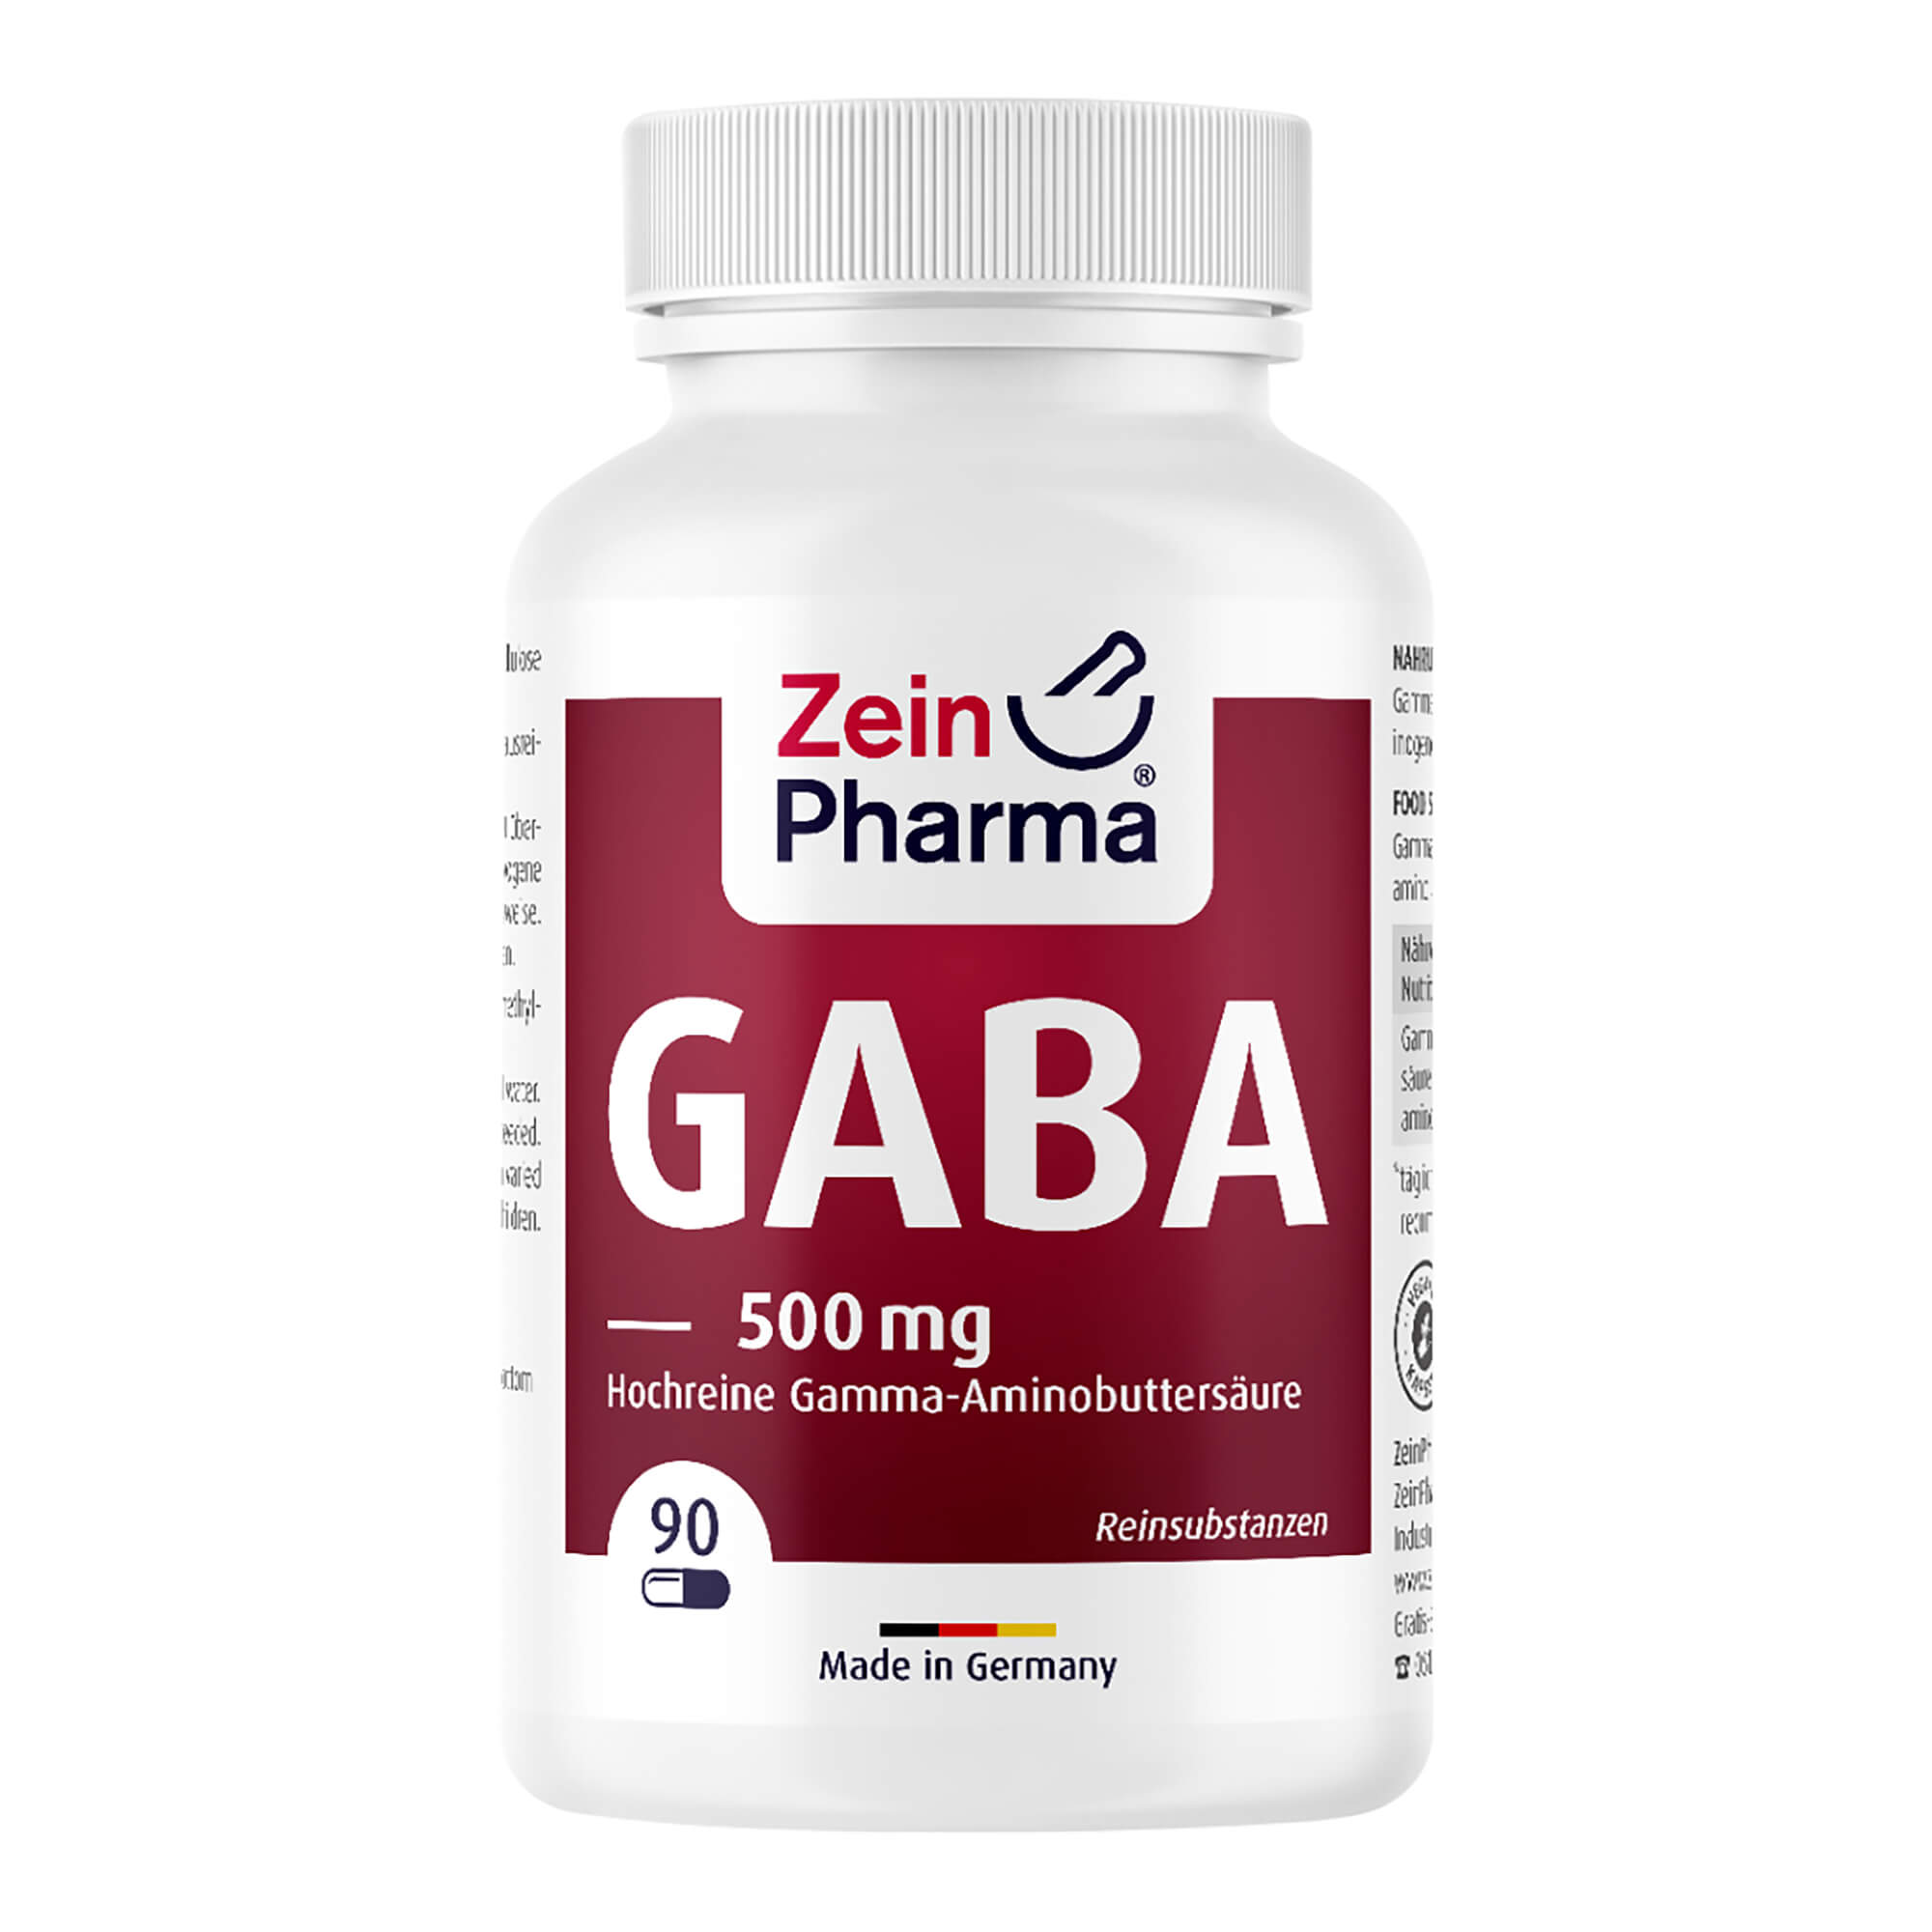 Nahrungsergänzungsmitel mit Gamma-Aminobuttersäure (GABA), eine nichtproteinogene Aminosäure, in vegetarischen Kapseln.